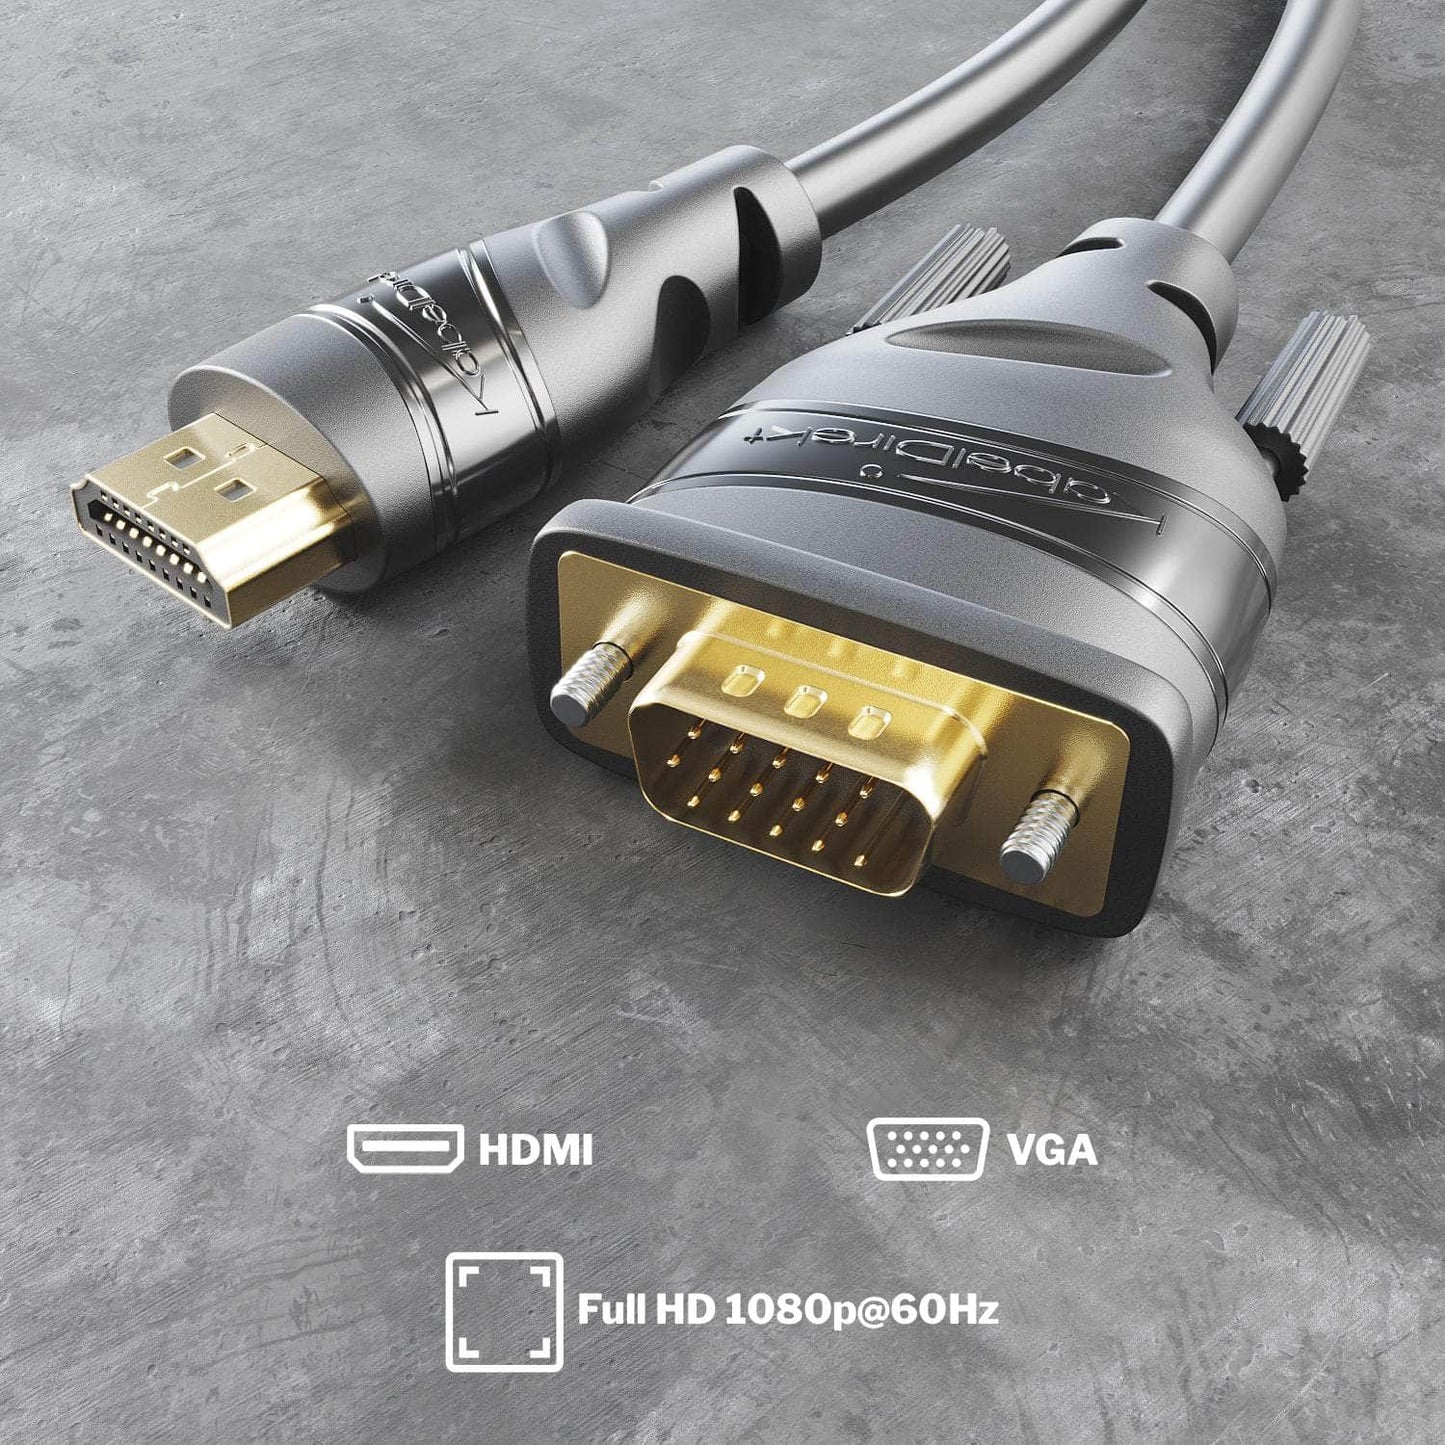 HDMI-VGA Adapter Cable - HDMI to VGA/D-Sub 15 Monitor Cable